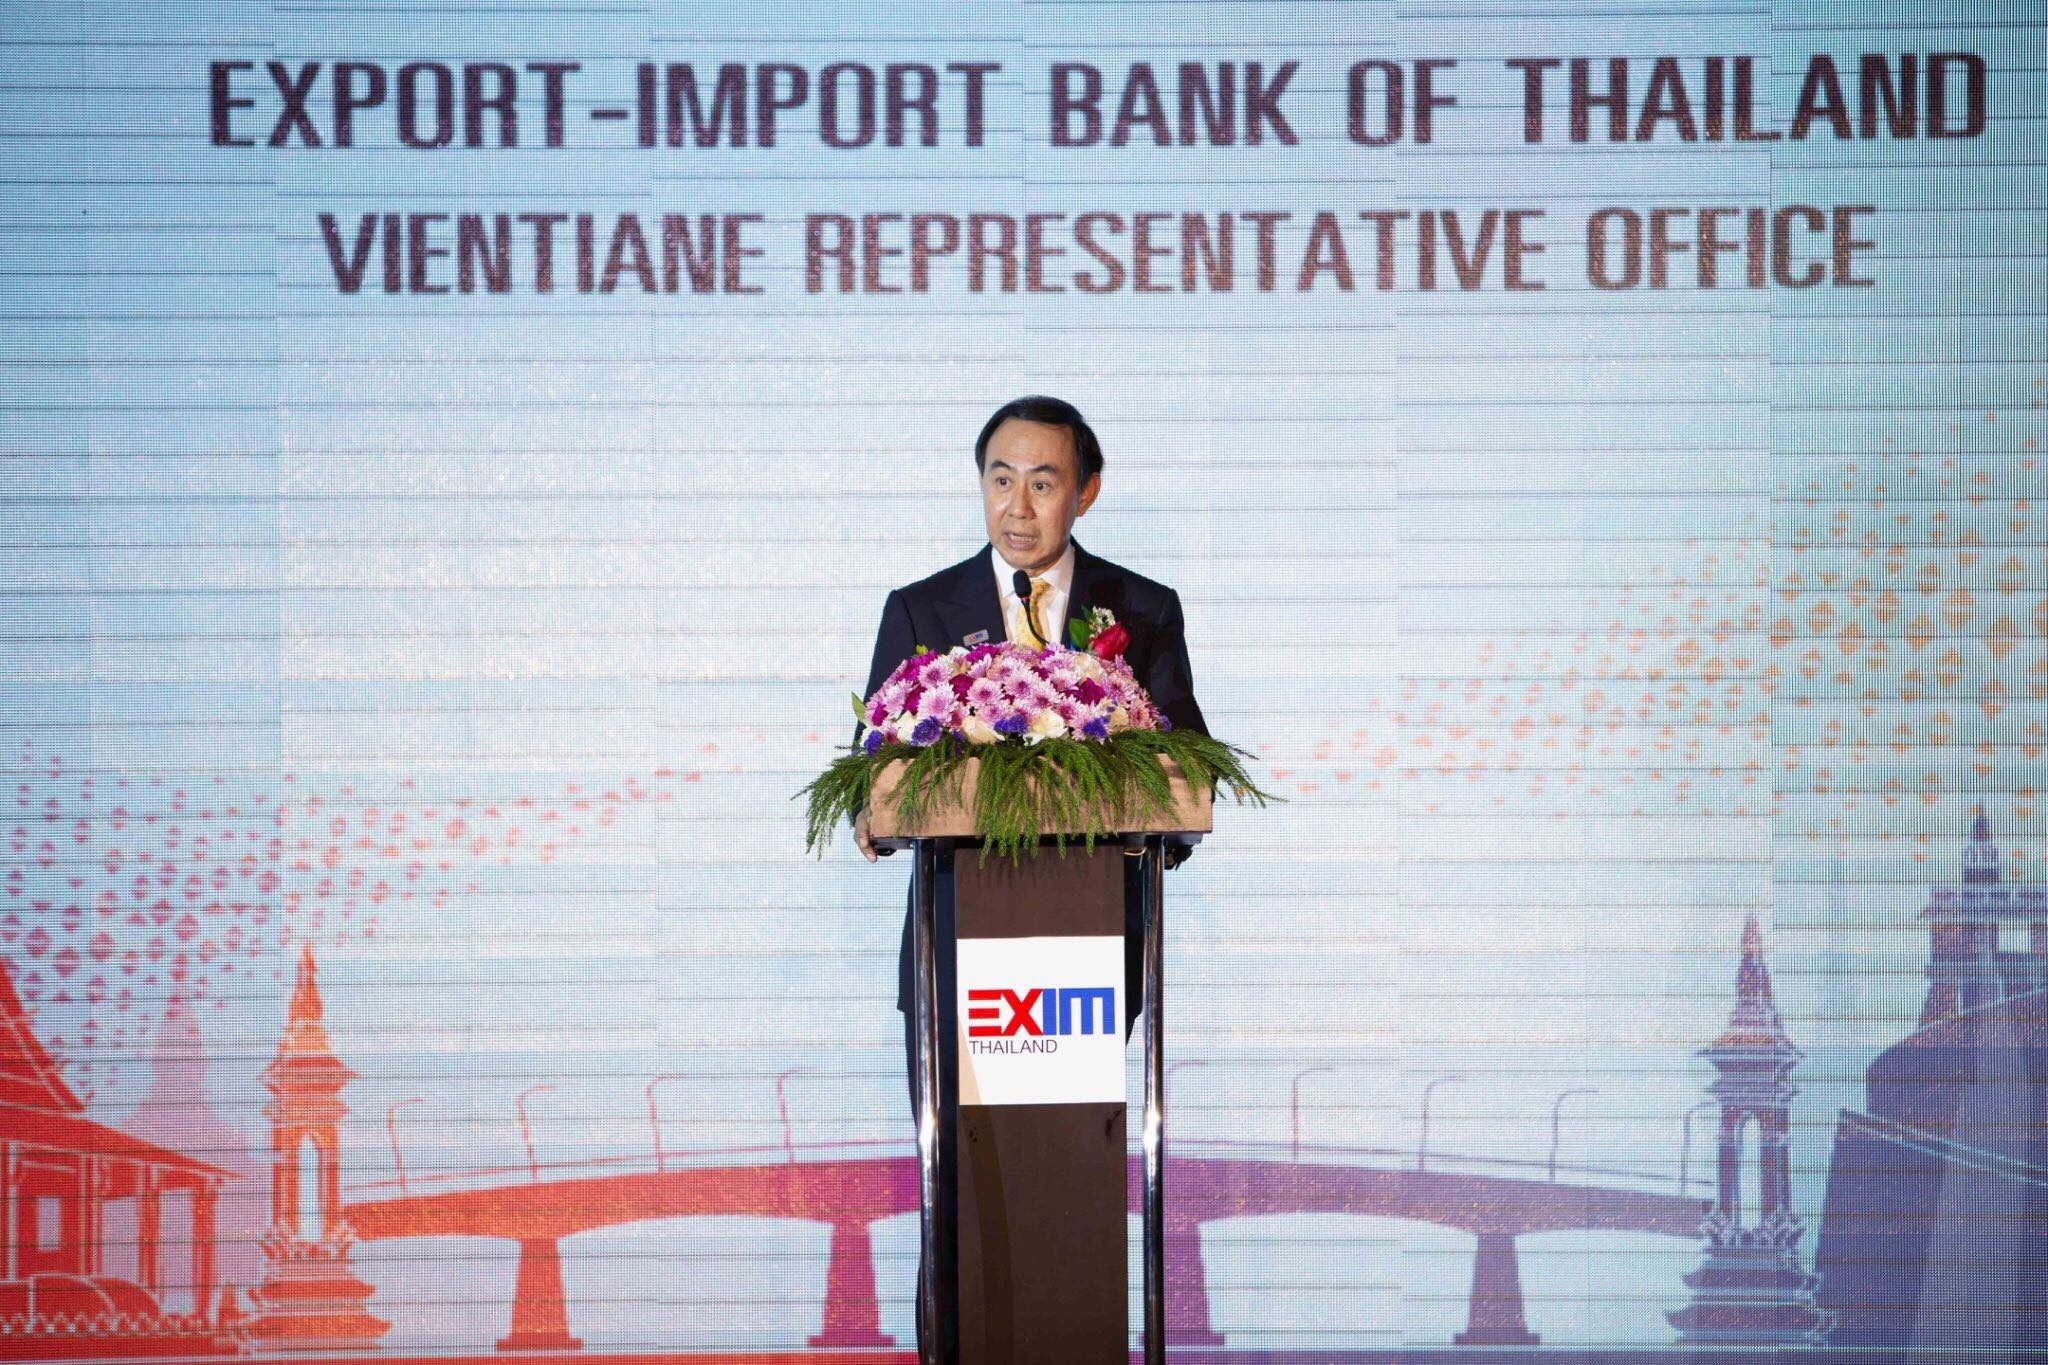 นายพิศิษฐ์ เสรีวัฒนา กรรมการผู้จัดการ ธนาคารเพื่อการส่งออกและนำเข้าแห่งประเทศไทย (EXIM BANK)